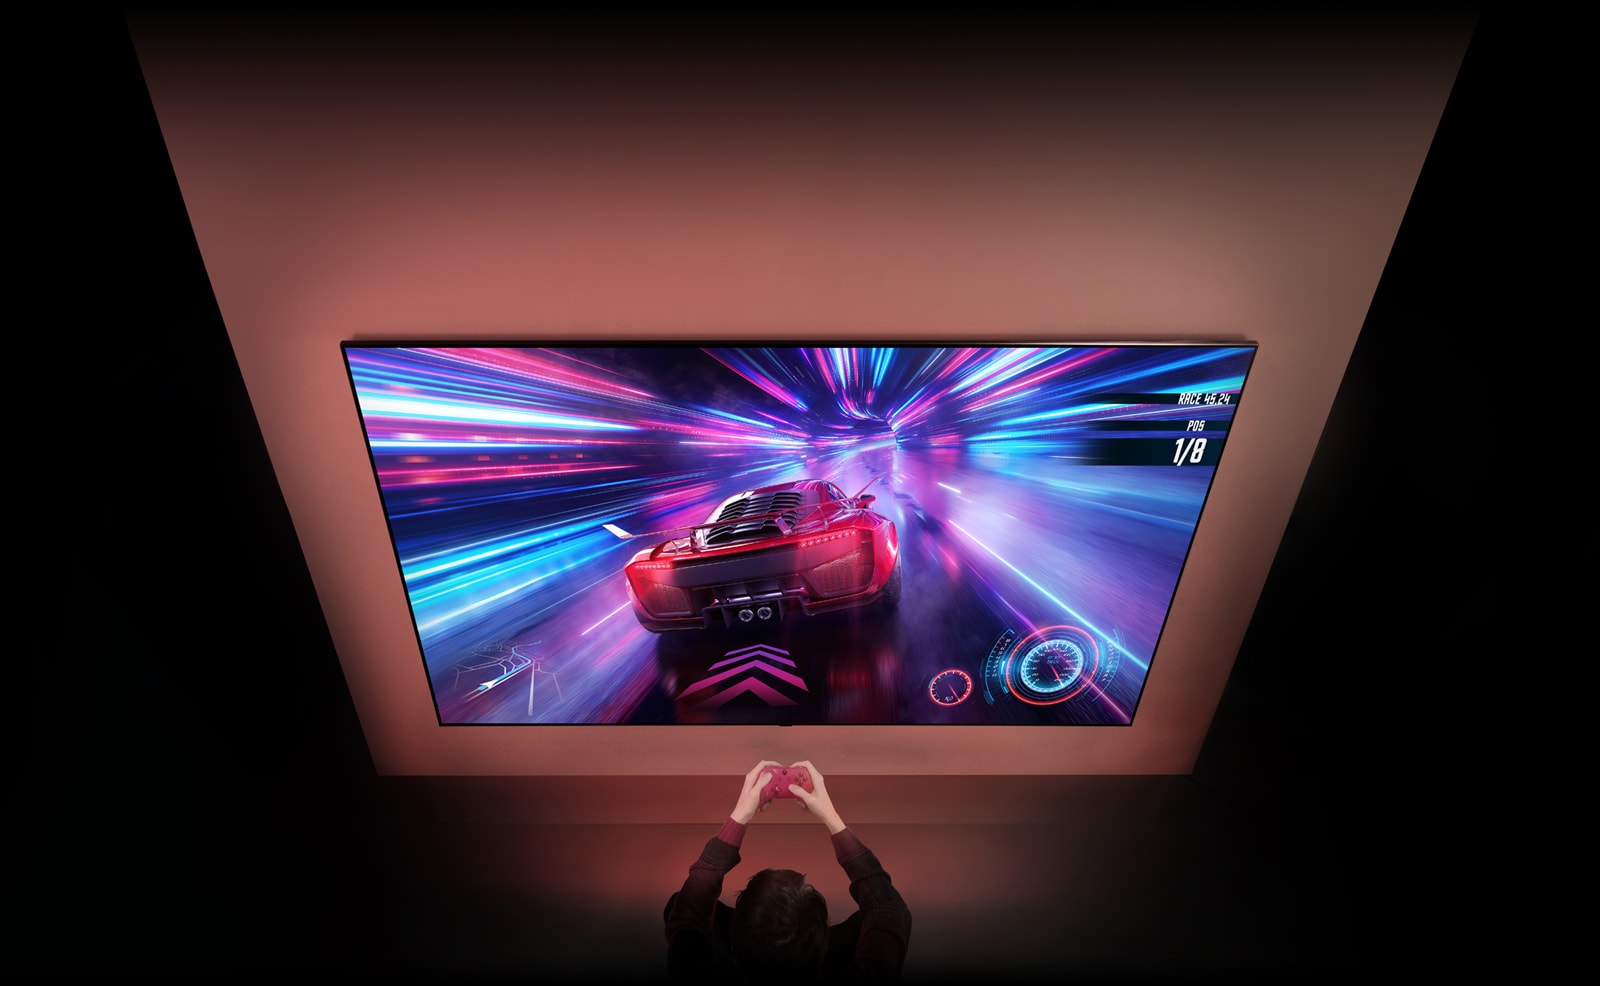 En stor TV är på väggen och skärmen visar ett pågående bilspel. Framför TV:n syns en spelkontroll i händerna på en person som är fokuserad på spelet.